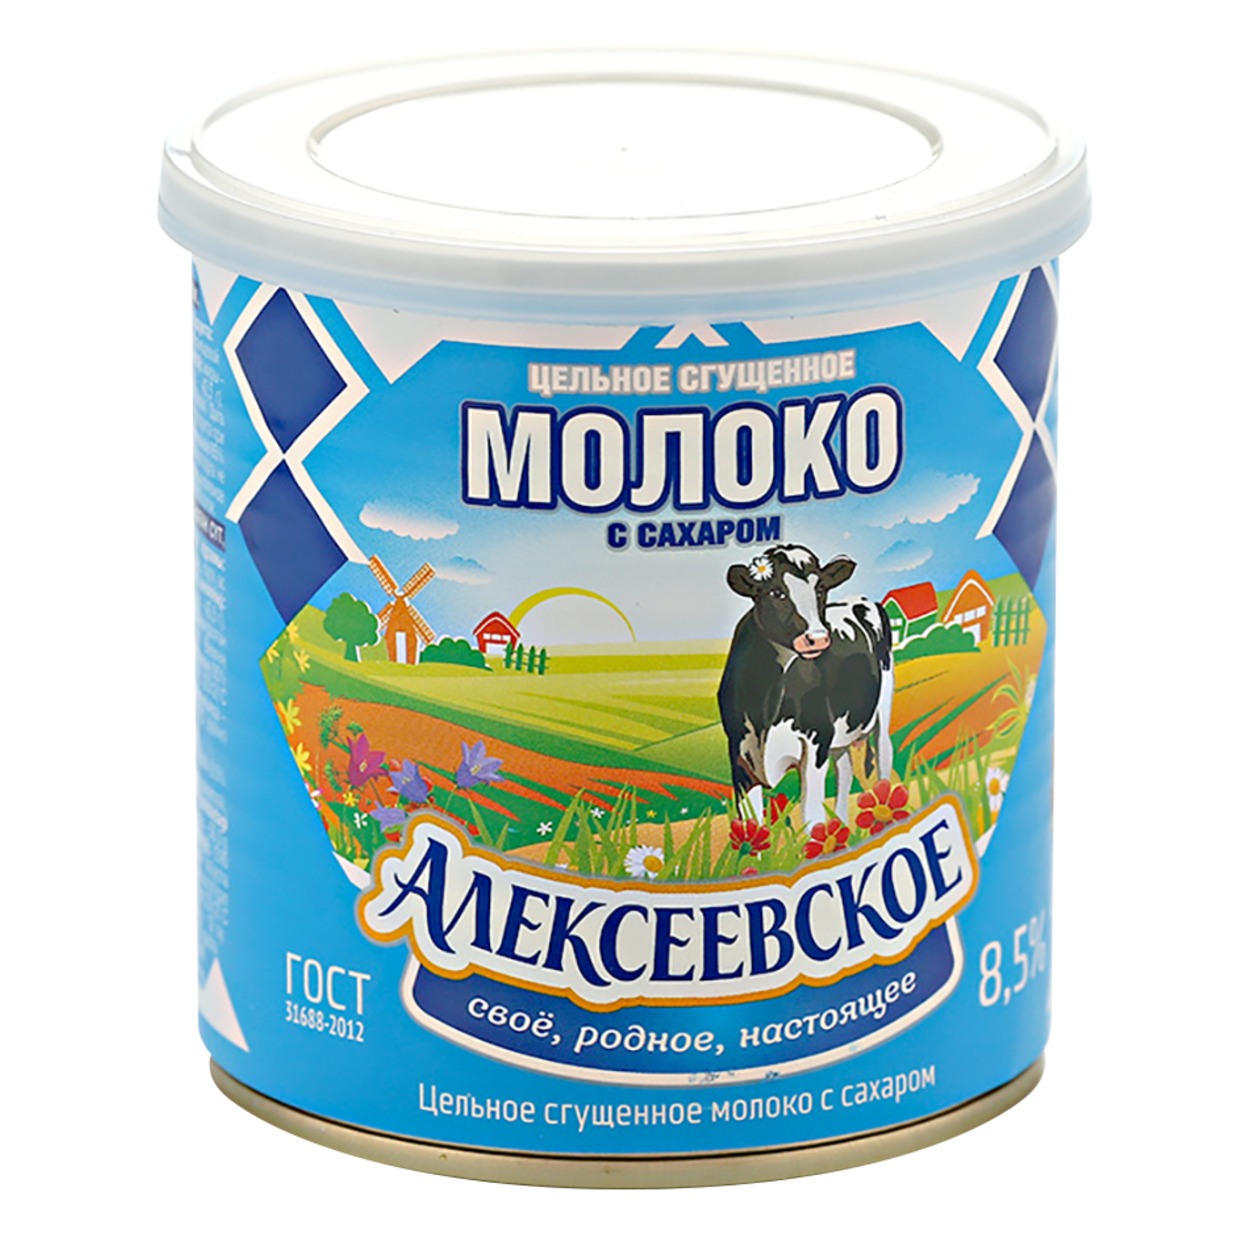 АЛЕКСЕЕВ.Молоко цел.сг.сах.8,5% ж/б 360г по акции в Пятерочке